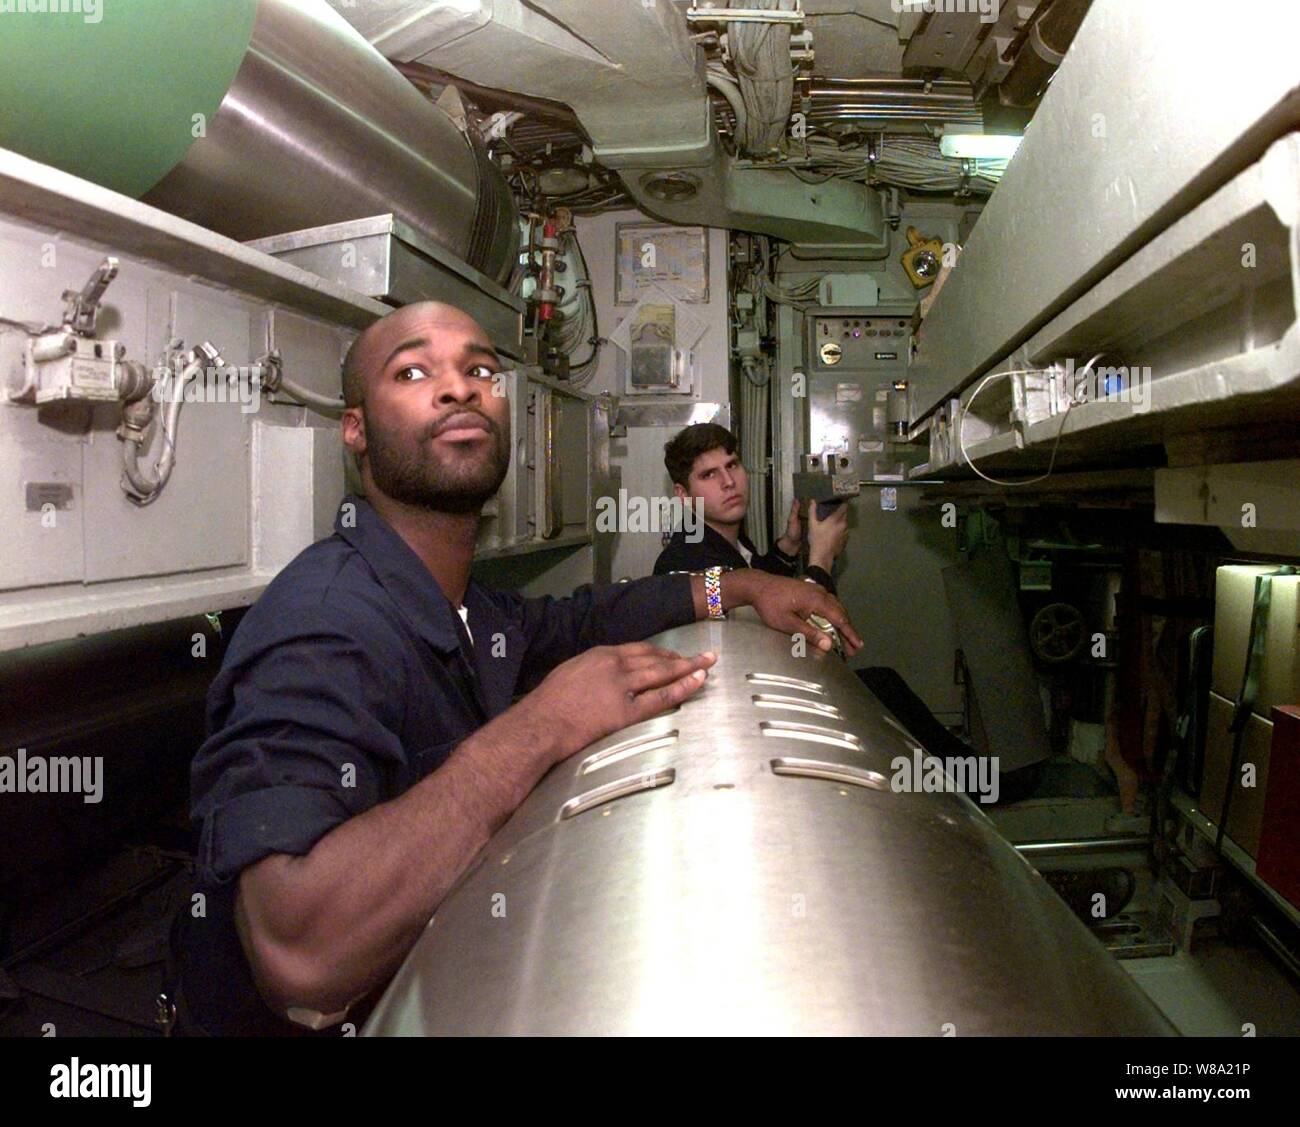 Seaman Daymond Jacobs (à gauche) et le Maître de 2e classe Jim Piatt attendre d'autres arrêtés au cours d'une pré-charge de l'inspection d'un missile de croisière Tomahawk dans la chambre des torpilles à bord du USS Norfolk (SSN 714) le 31 mars 1999. Le sous-marin d'attaque de classe Los Angeles est opérant dans la mer Adriatique à l'appui de l'opération Force alliée de l'OTAN. Banque D'Images